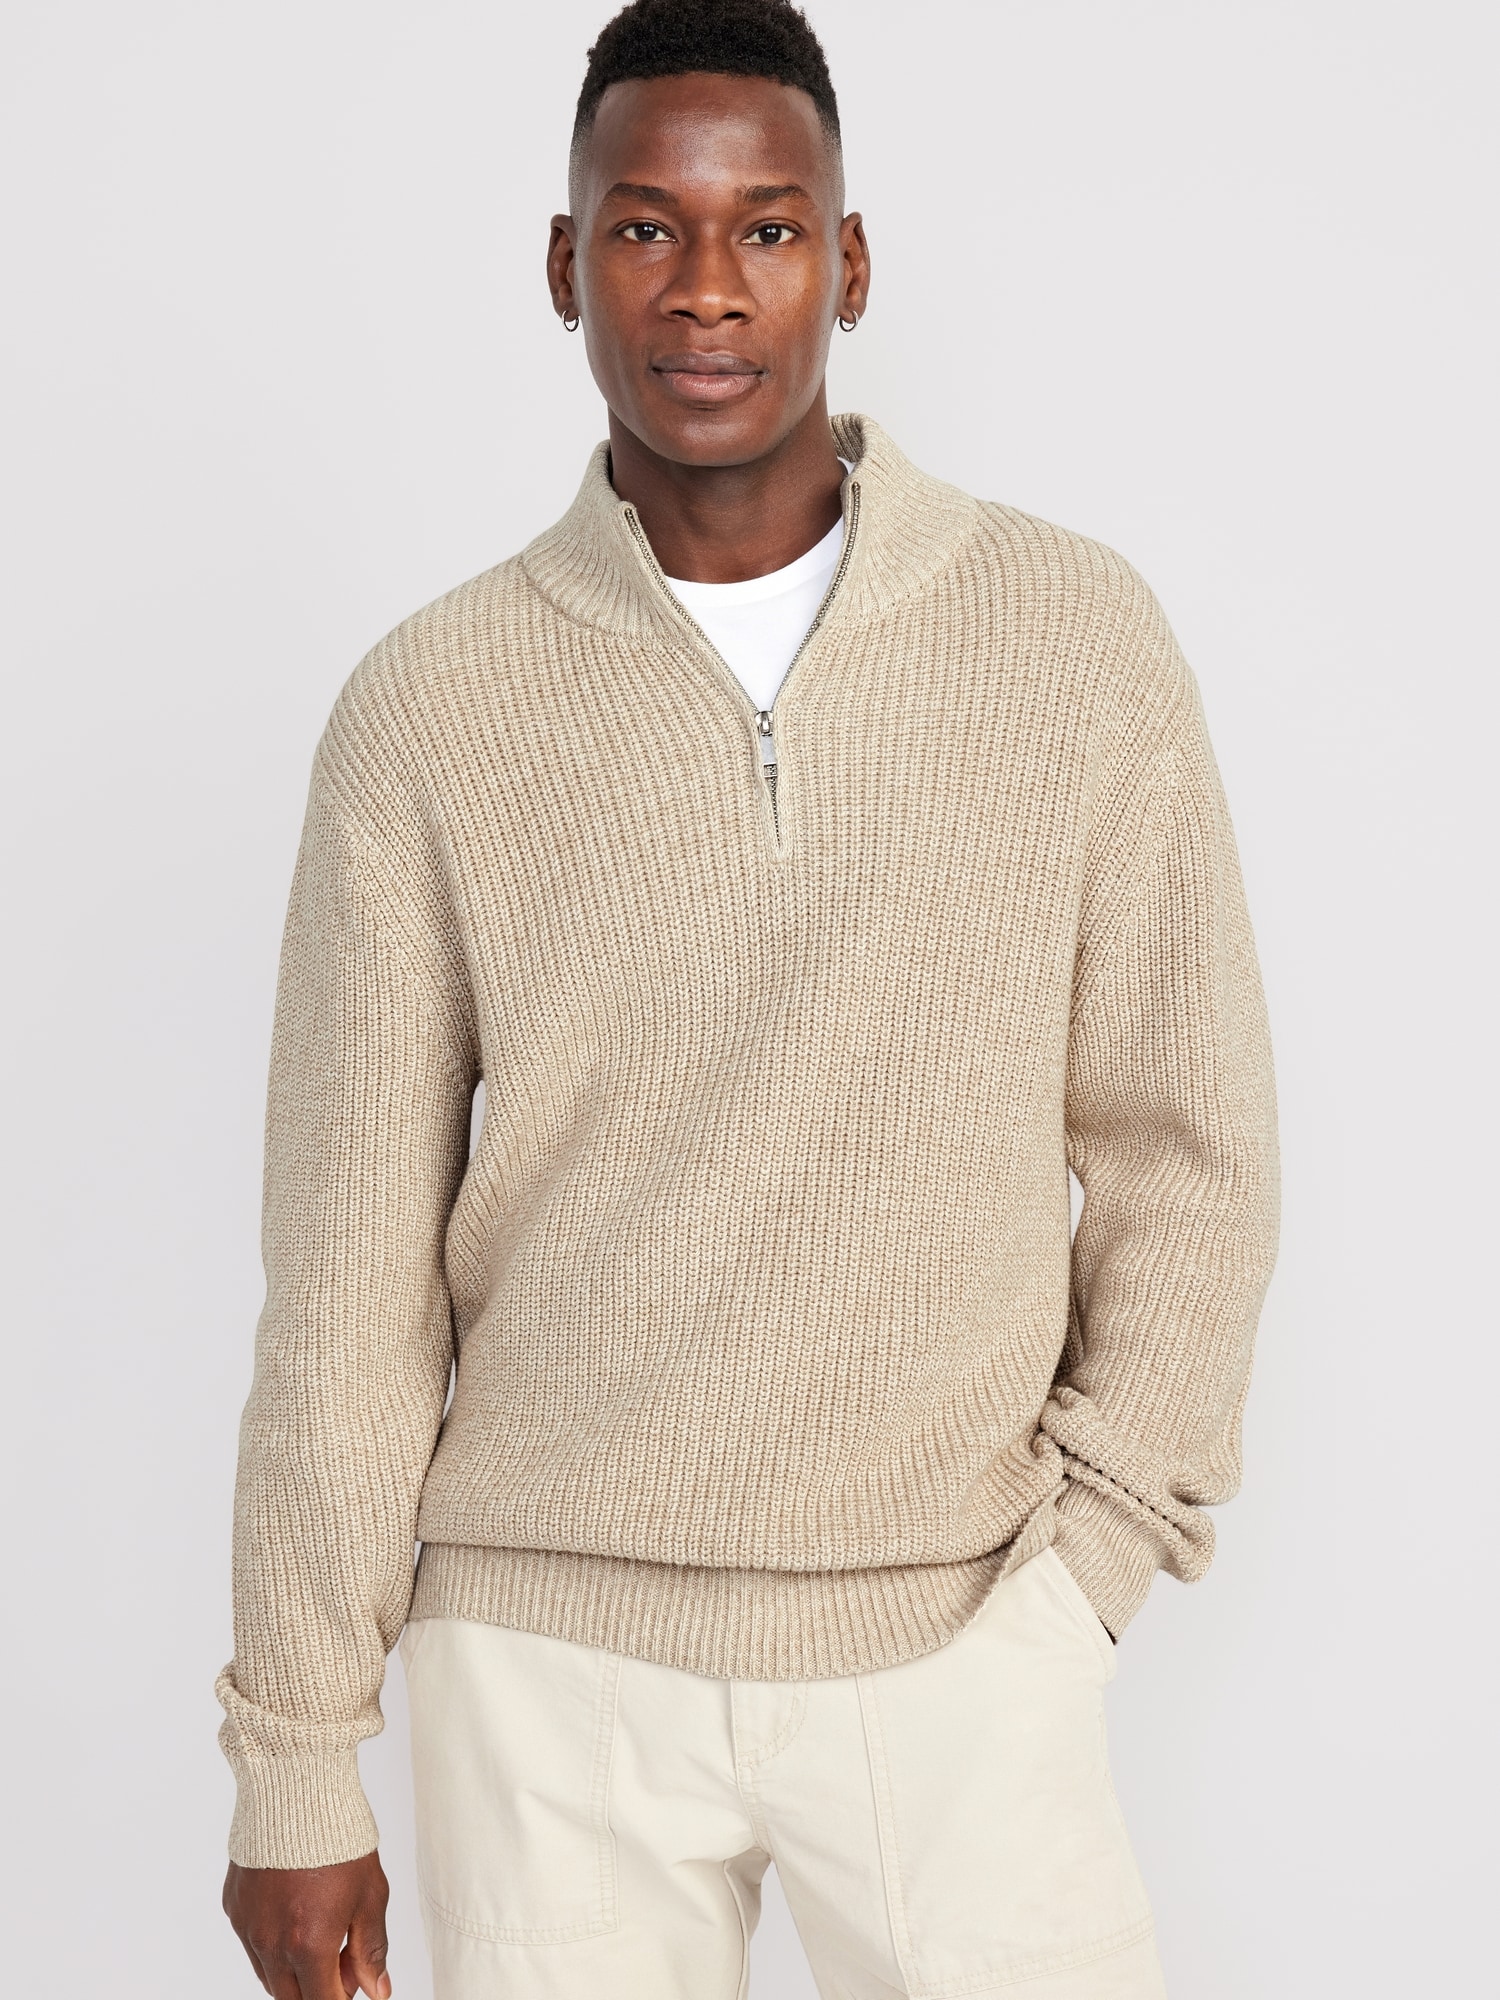 Men's Quarter Zip Sweaters